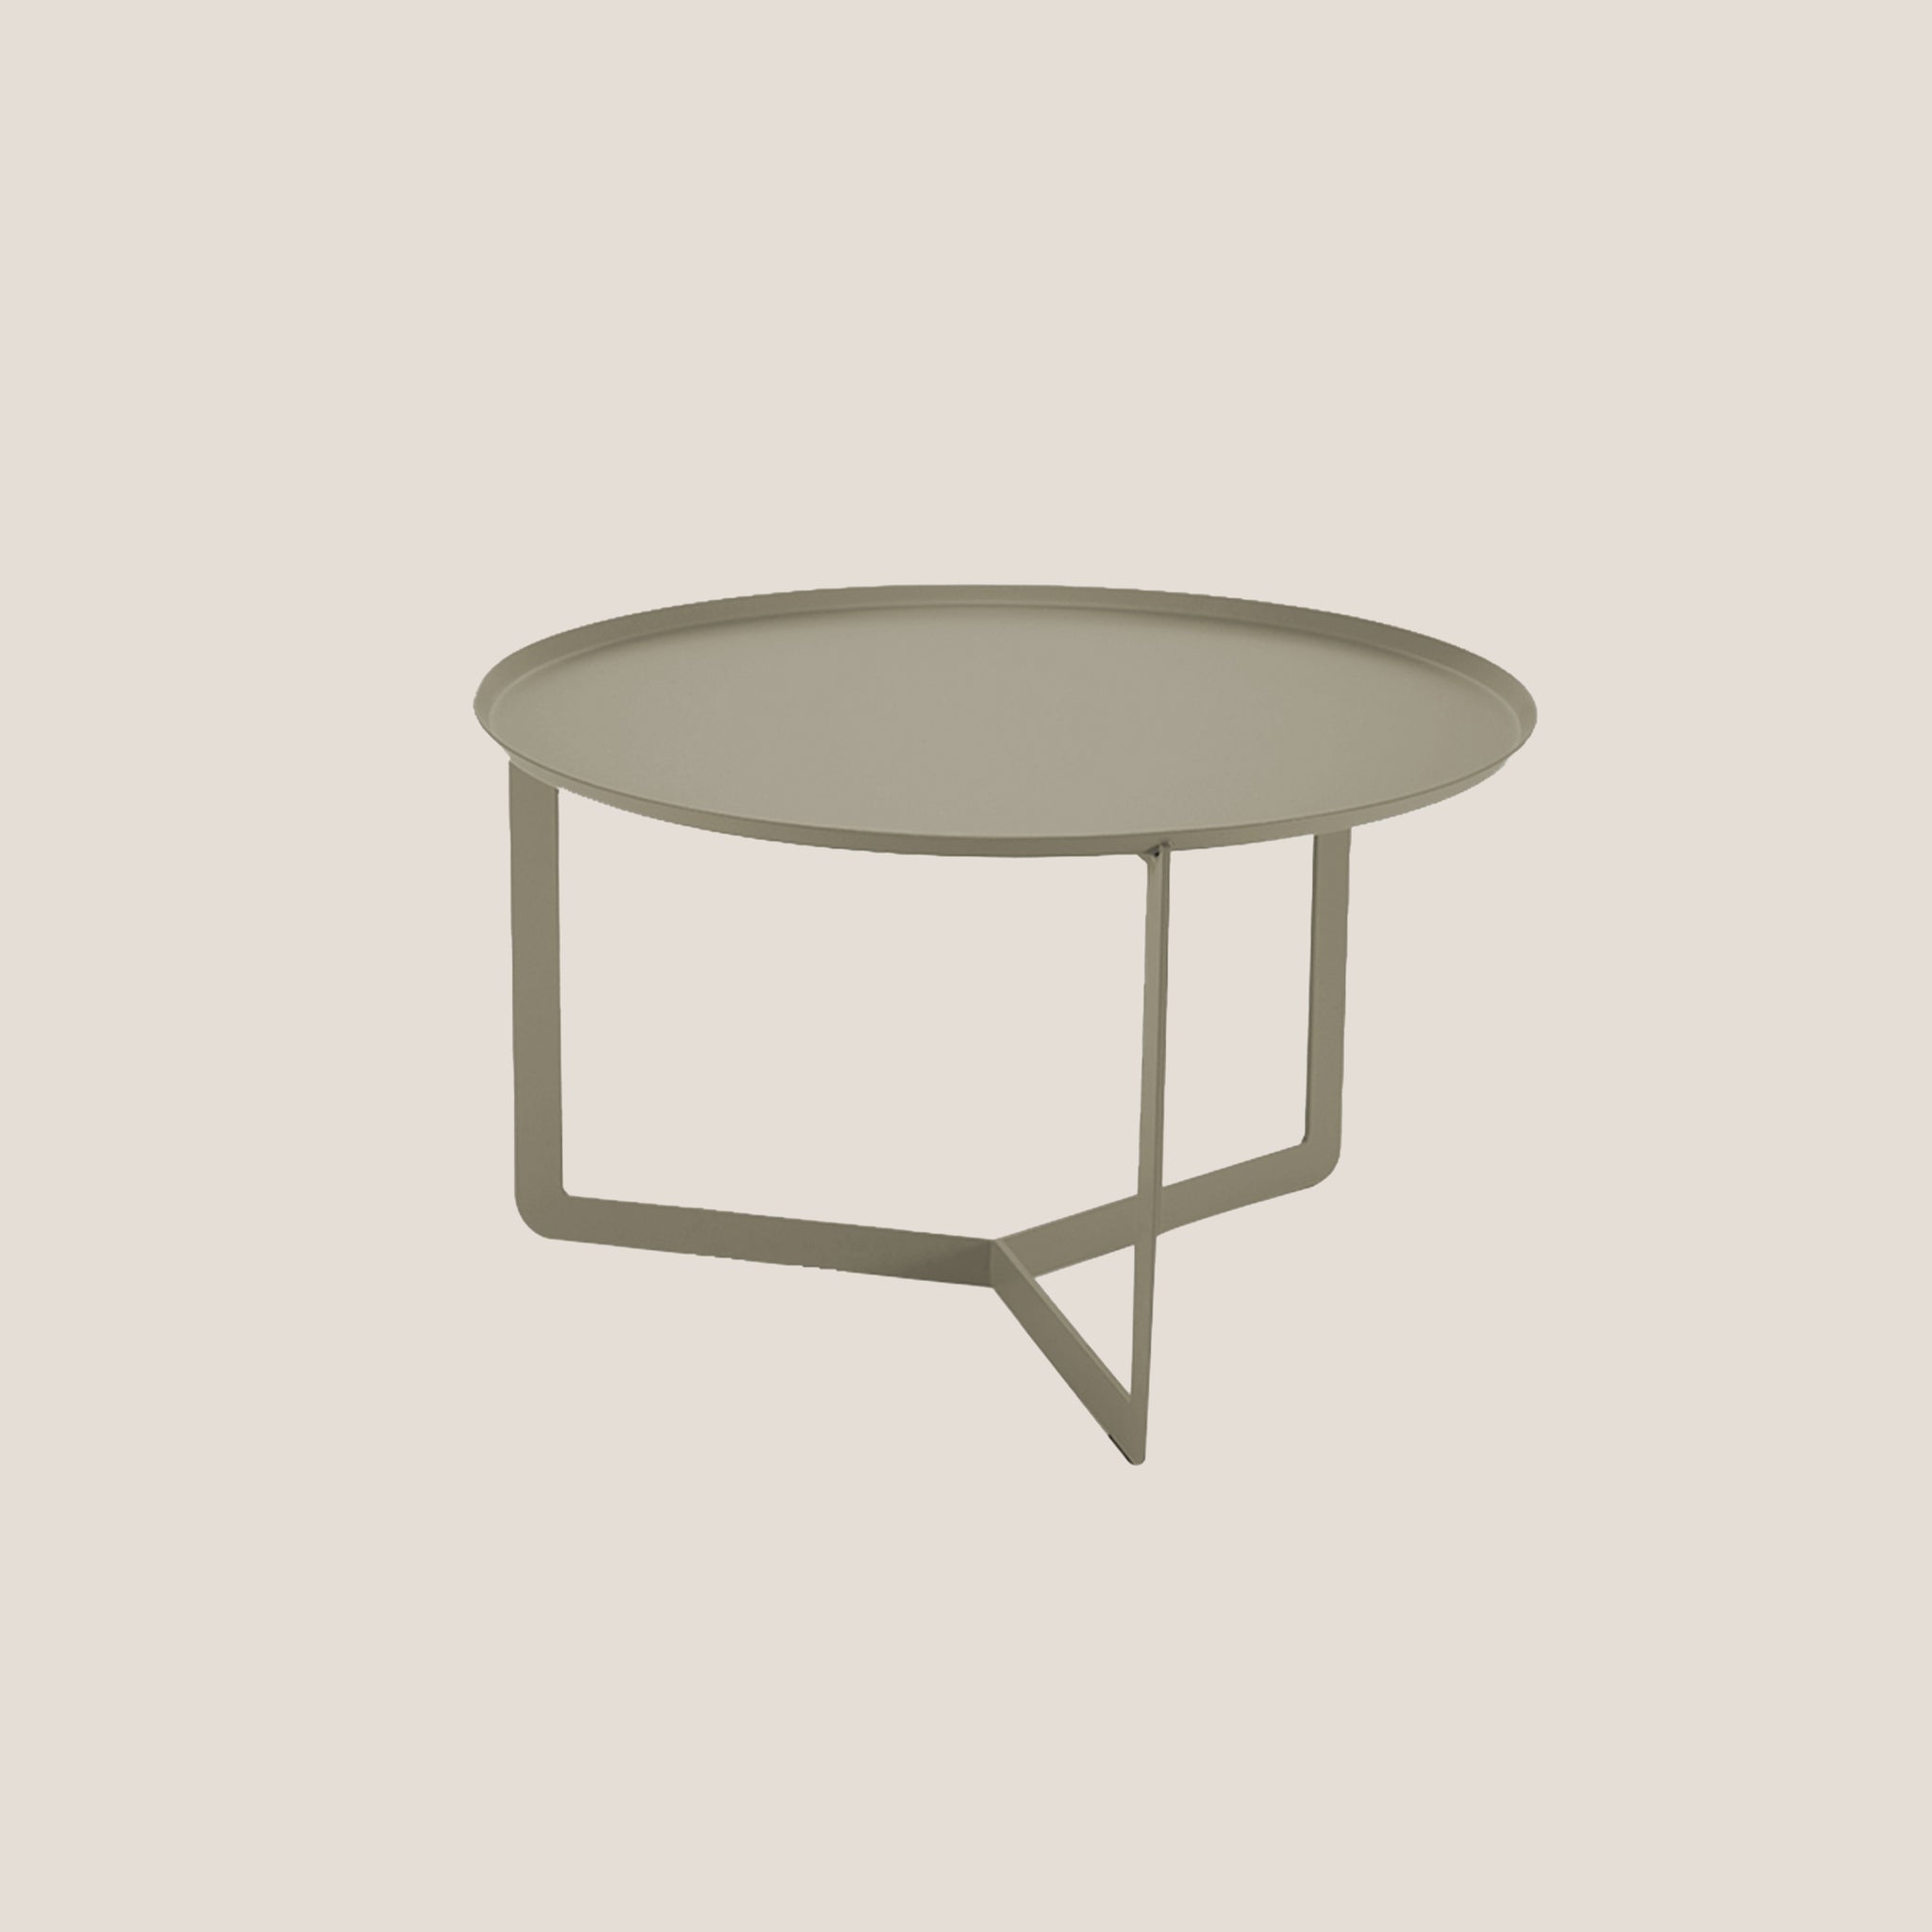 Round tavolino rotondo da salotto in metallo h36 cm